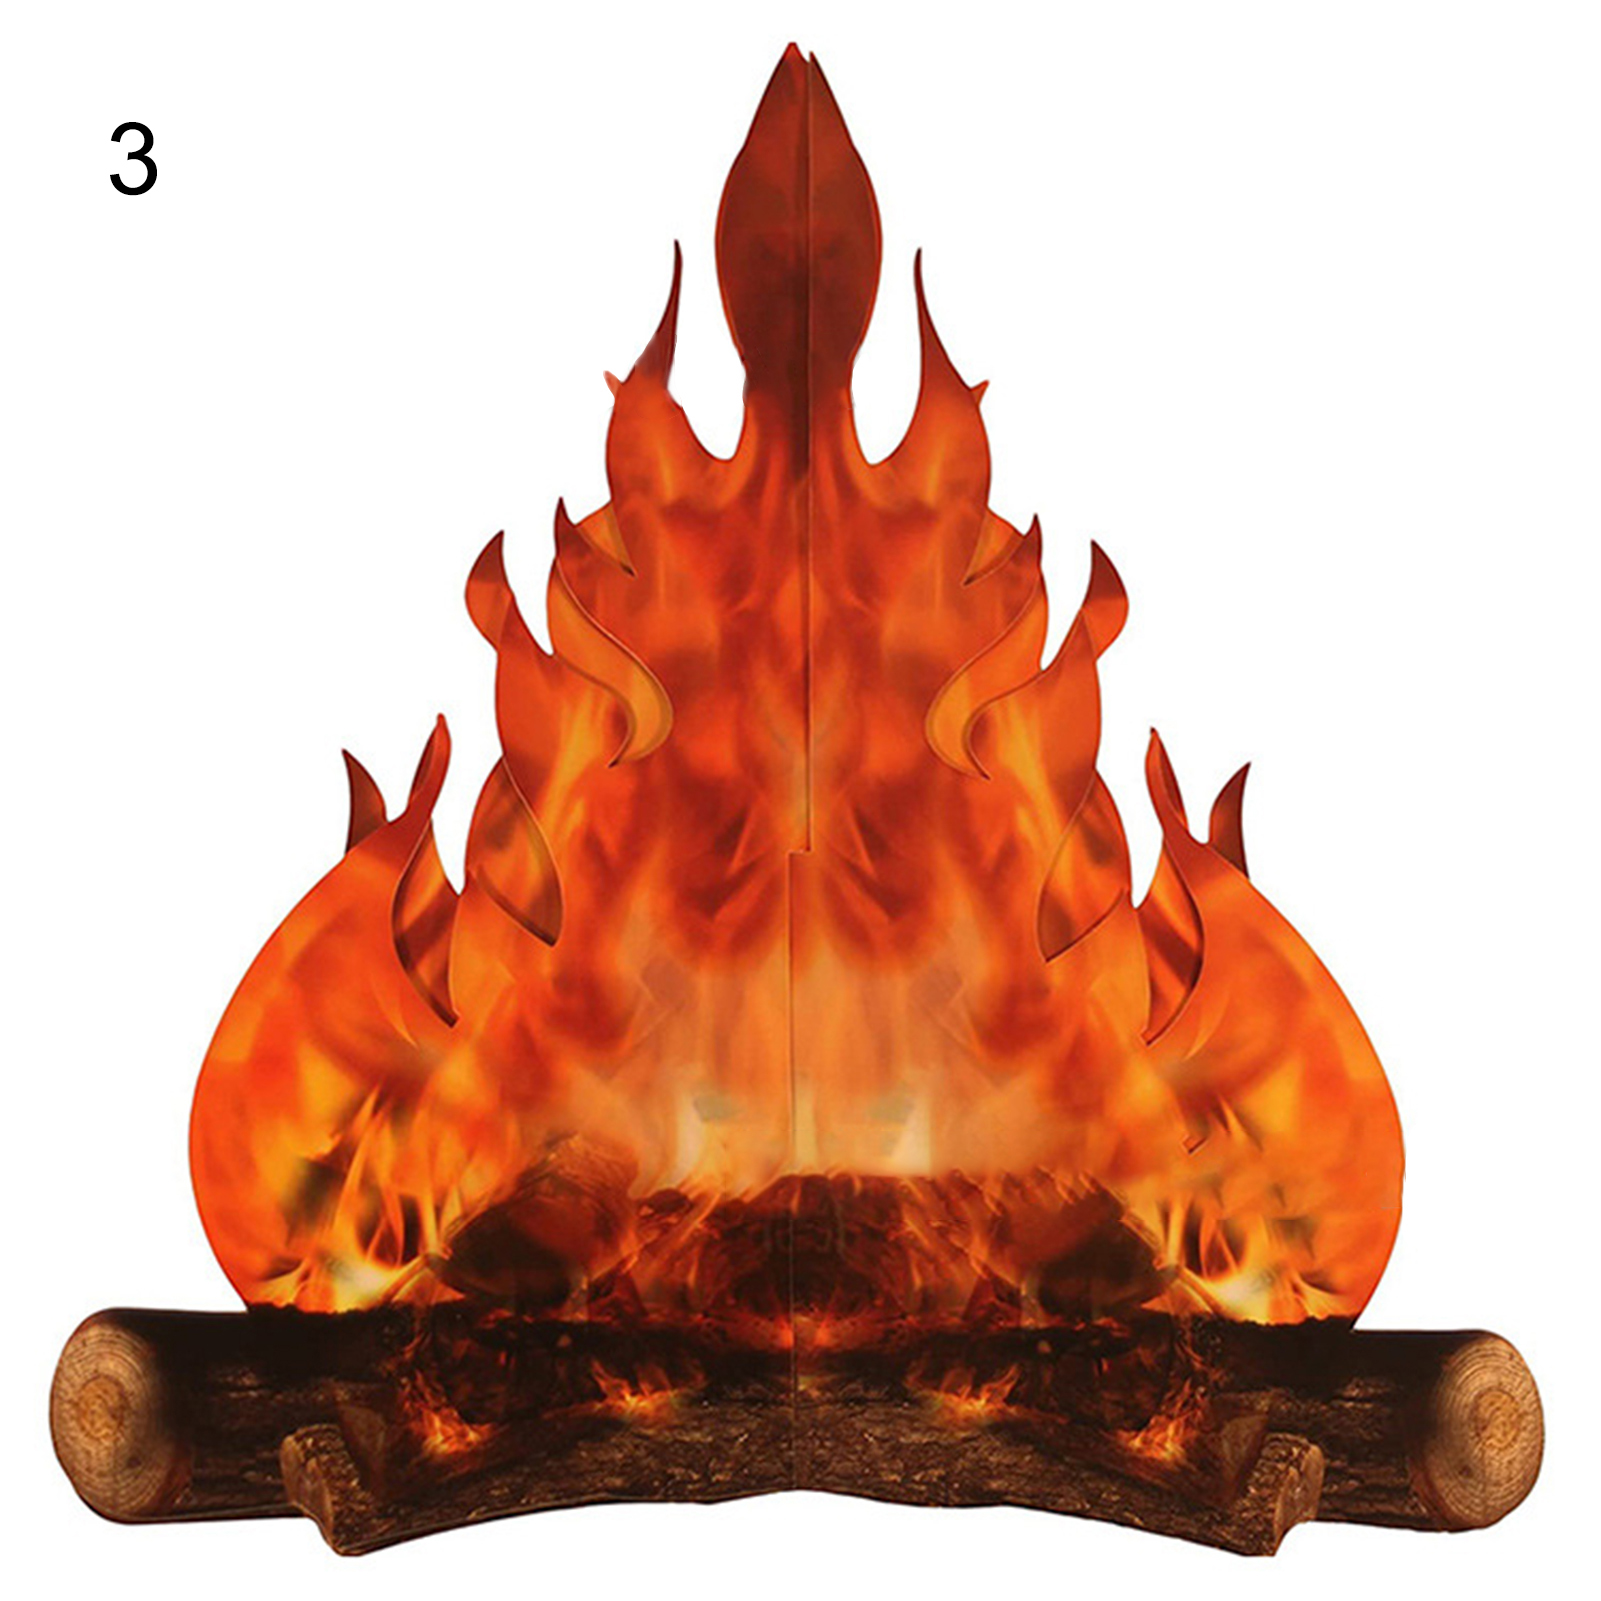 Với giấy ngọn lửa giả 3D, bạn sẽ có được một cái nhìn khái quát về cảm giác ấm áp và nguy hiểm của ngọn lửa. Với hiệu ứng 3D cực kỳ sống động, bạn sẽ có cảm giác mình đang chứng kiến cảnh tượng thật sự của ngọn lửa cháy. Hãy đón xem ngay để trải nghiệm!